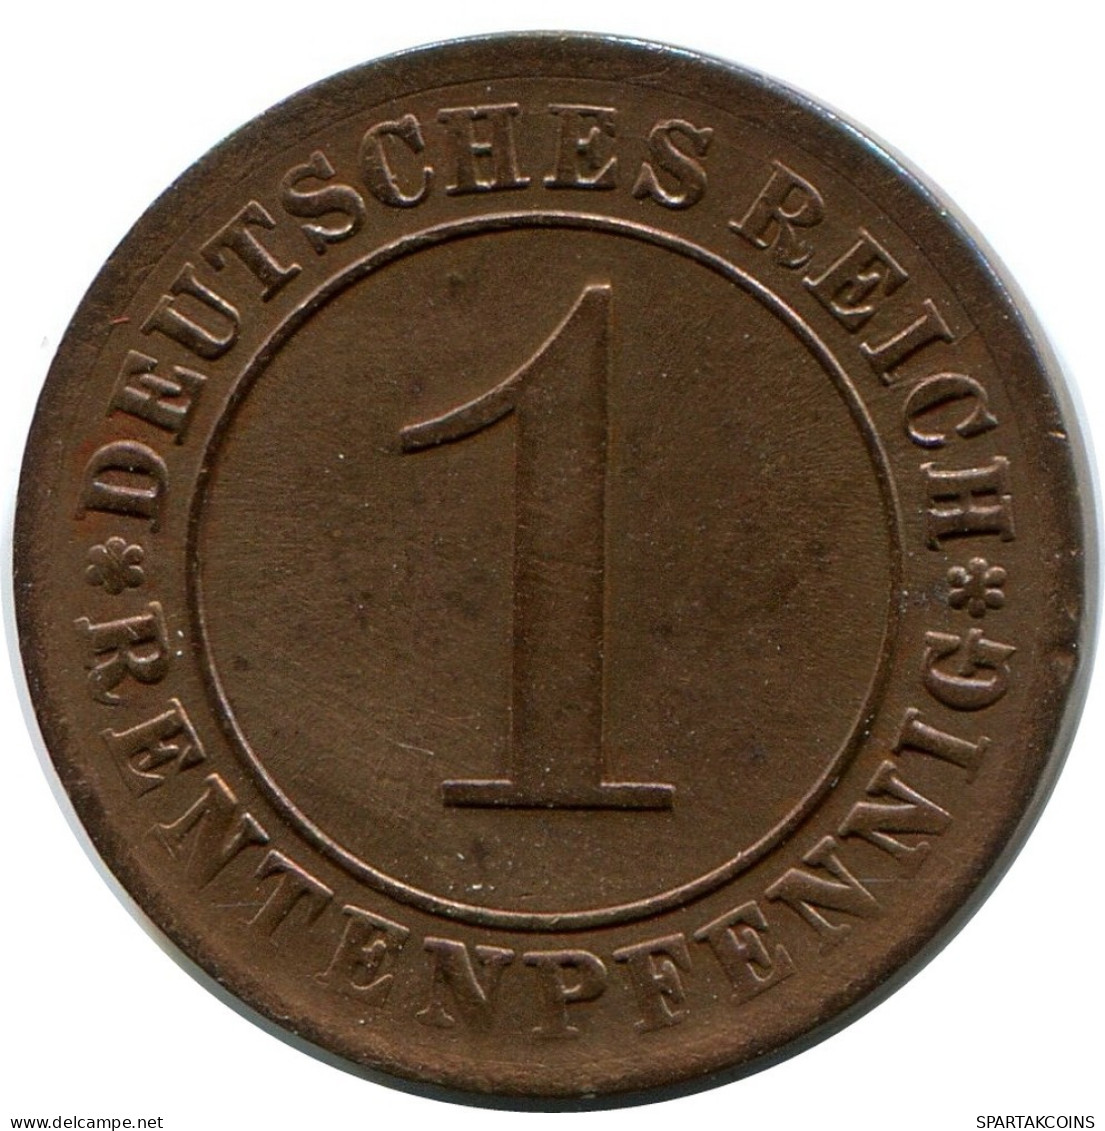 1 RENTENPFENNIG 1924 A DEUTSCHLAND Münze GERMANY #DB770.D.A - 1 Rentenpfennig & 1 Reichspfennig